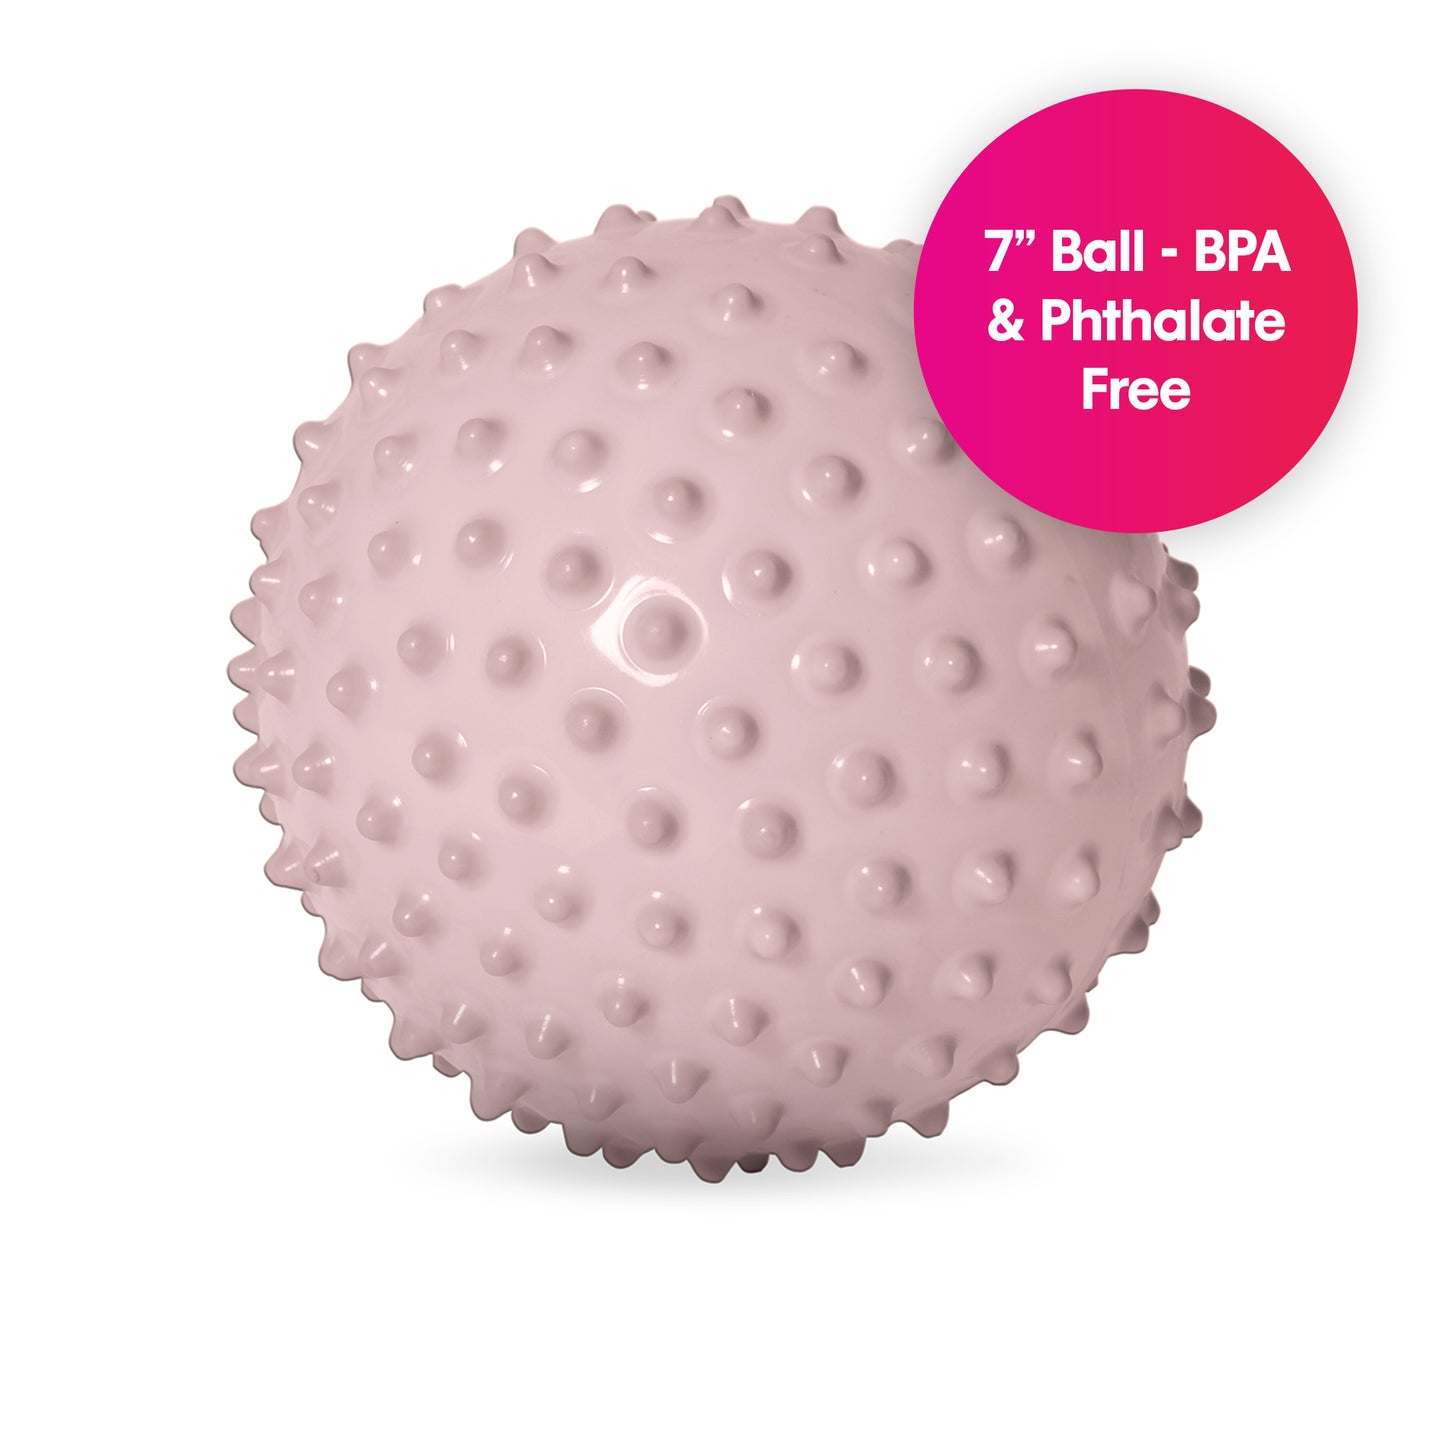 The Original Sensory Ball, Opaque in Boho Chic (Pink)